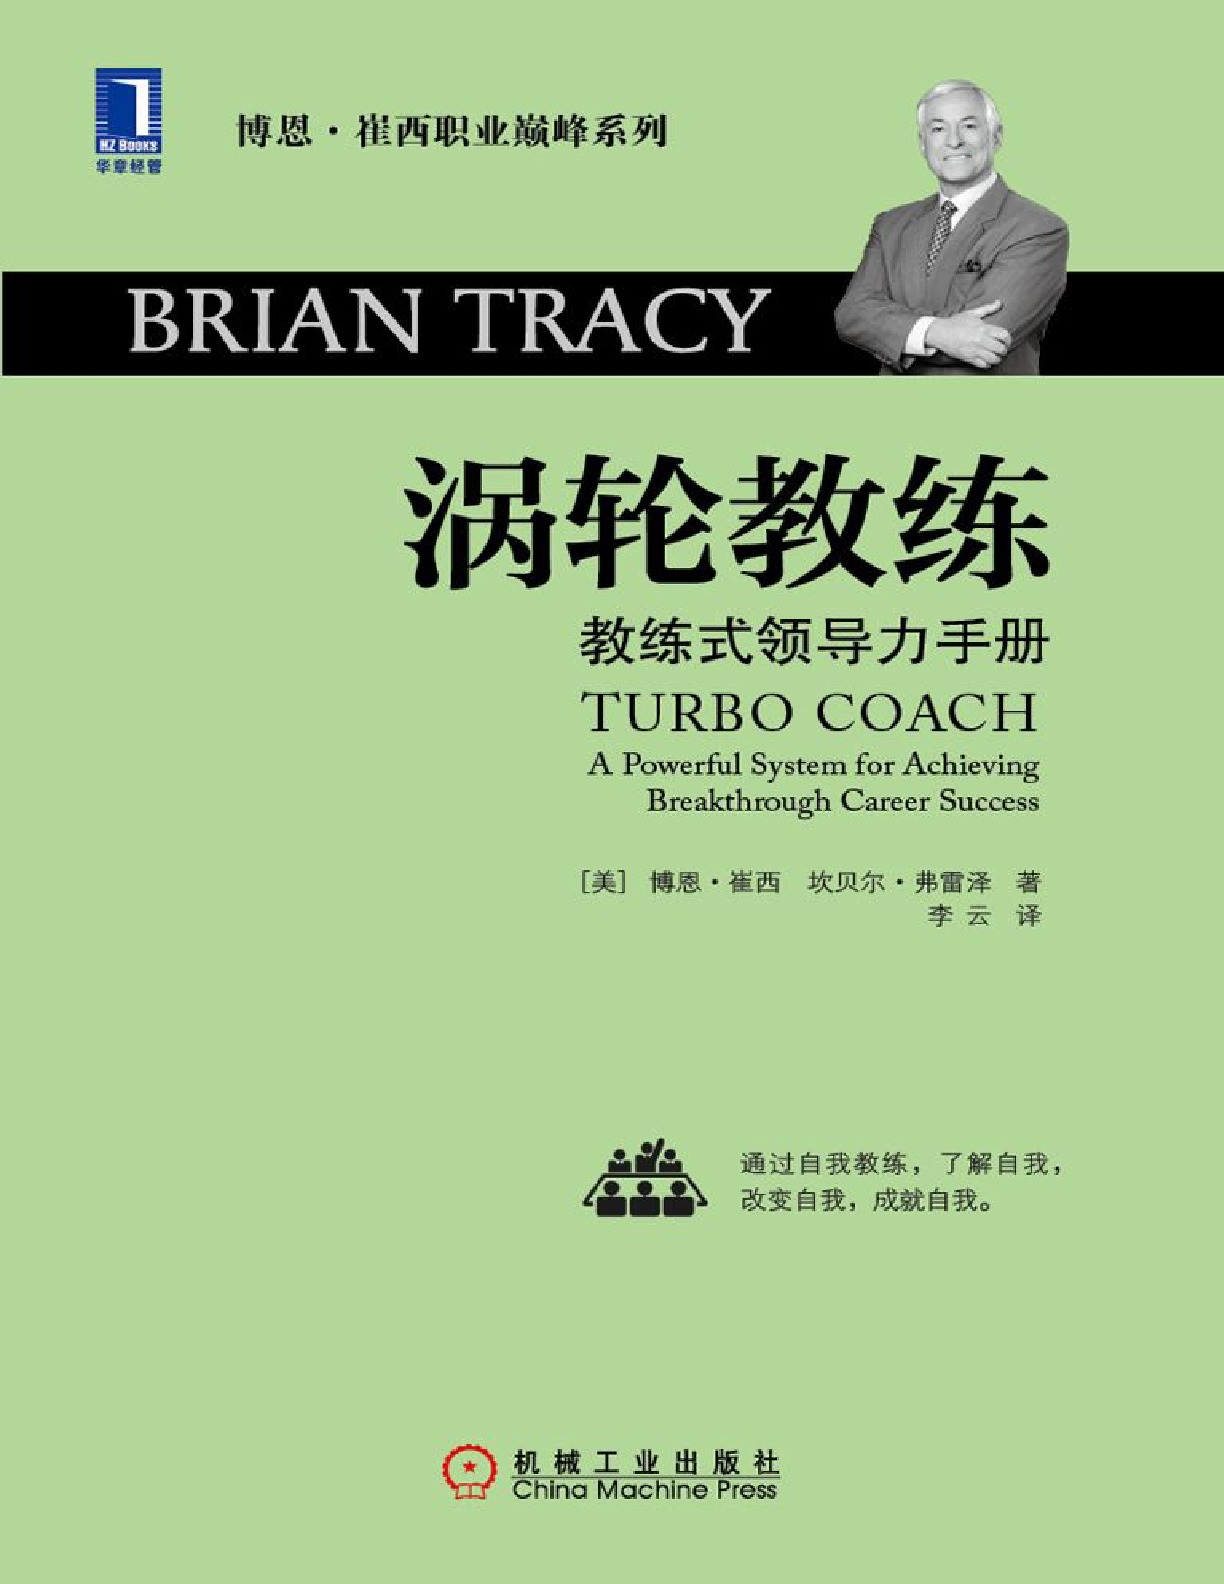 涡轮教练：教练式领导力手册 – 博恩·崔西 & 坎贝尔·弗雷泽